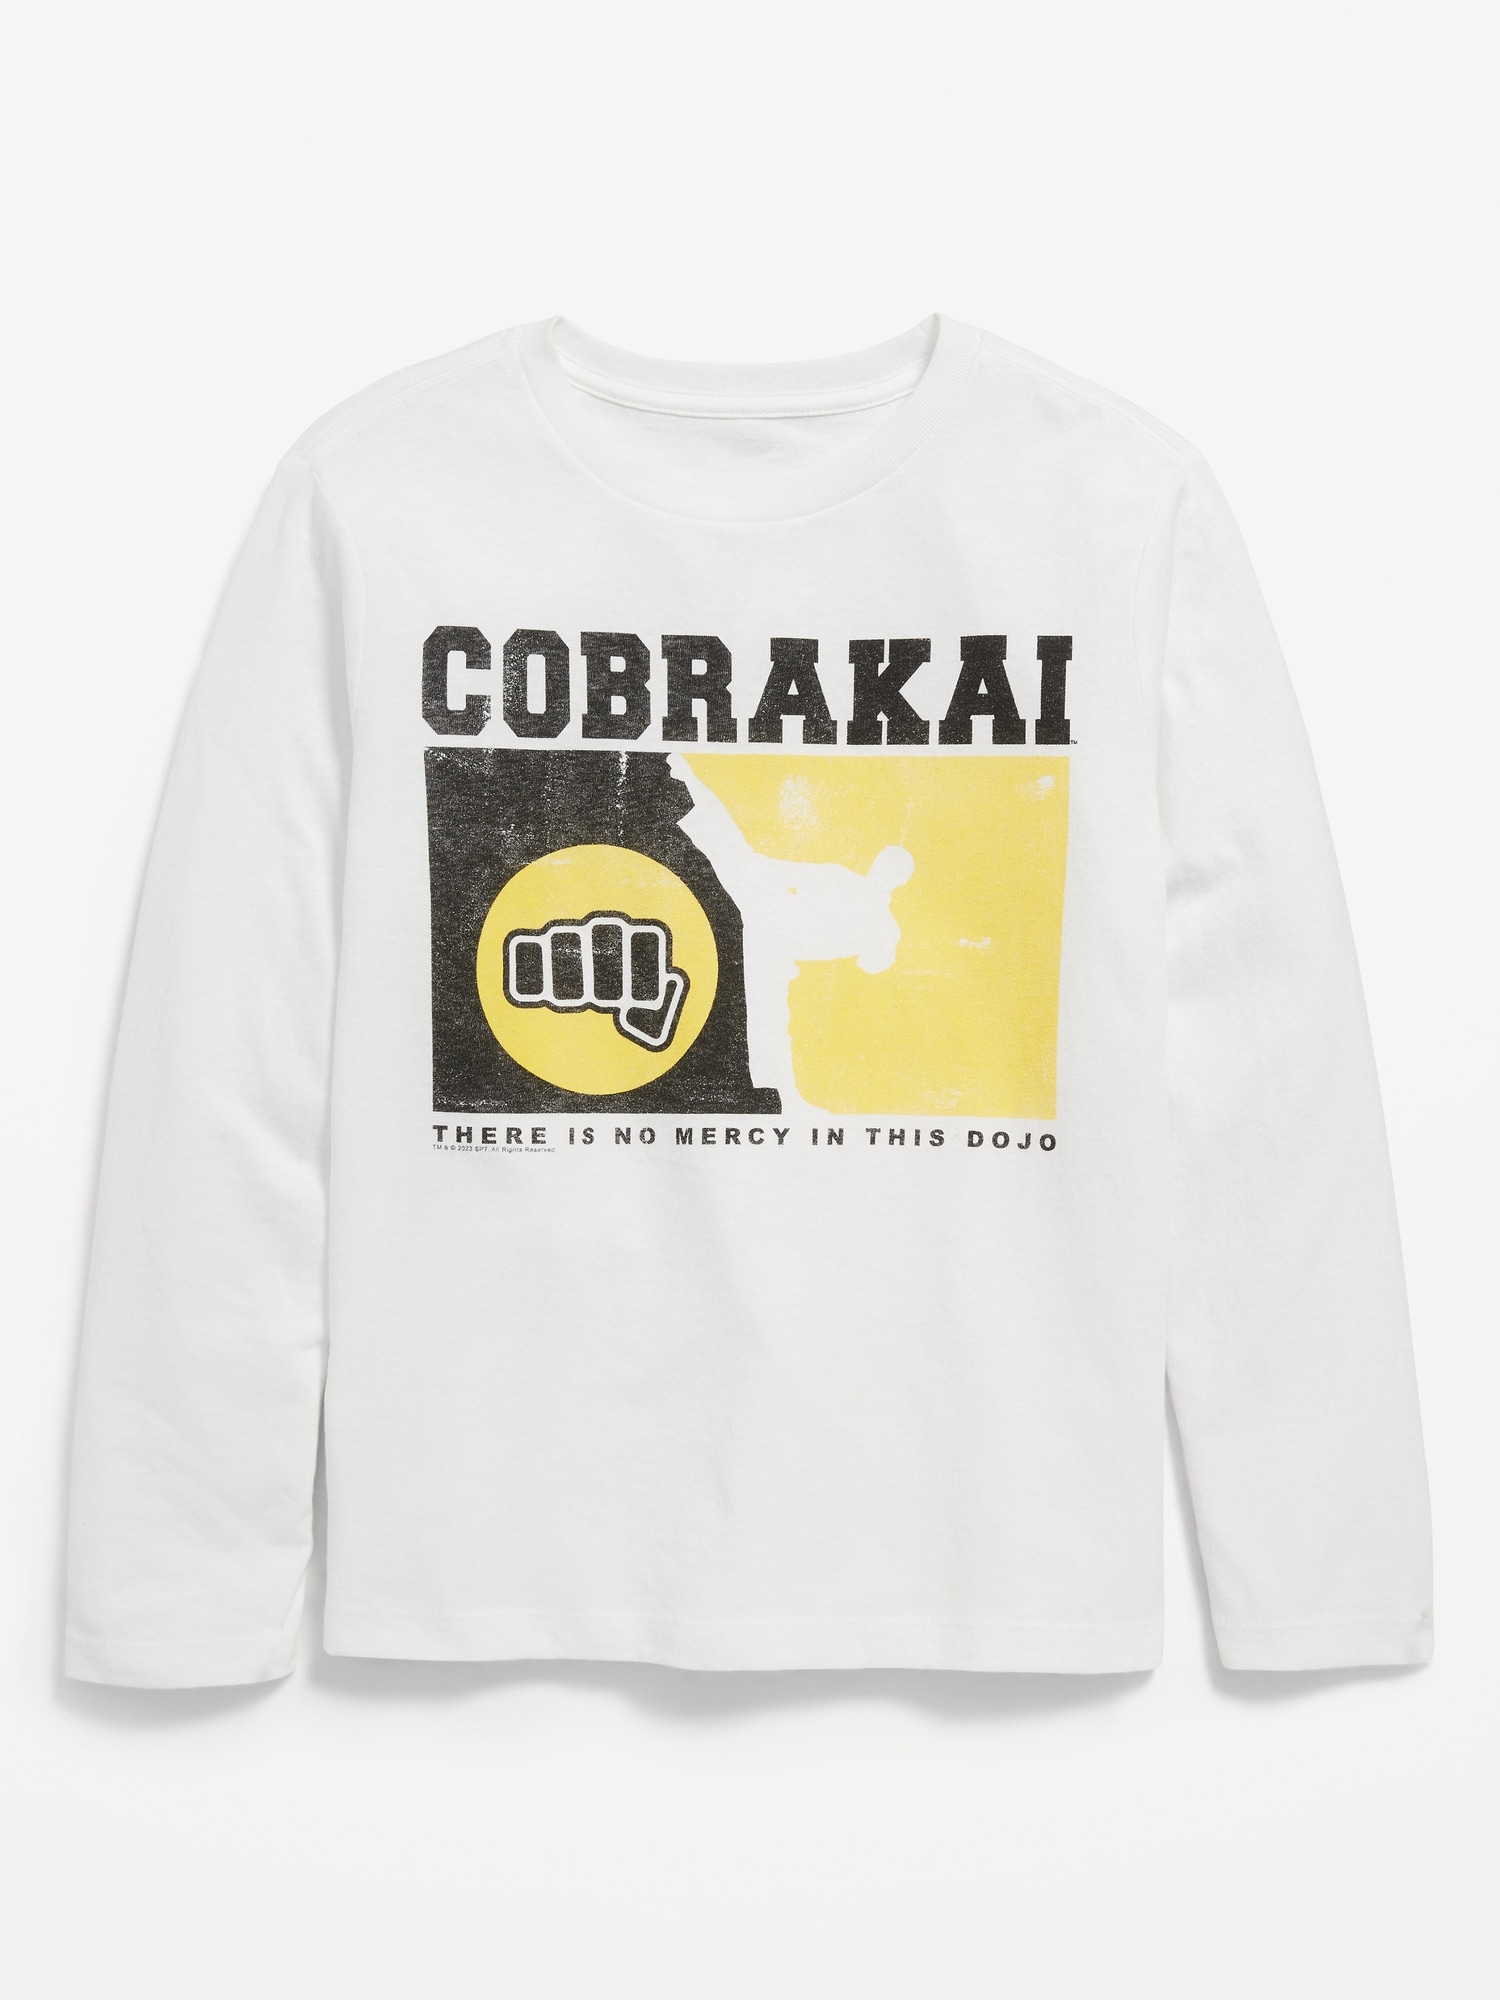 cobra kai shirt